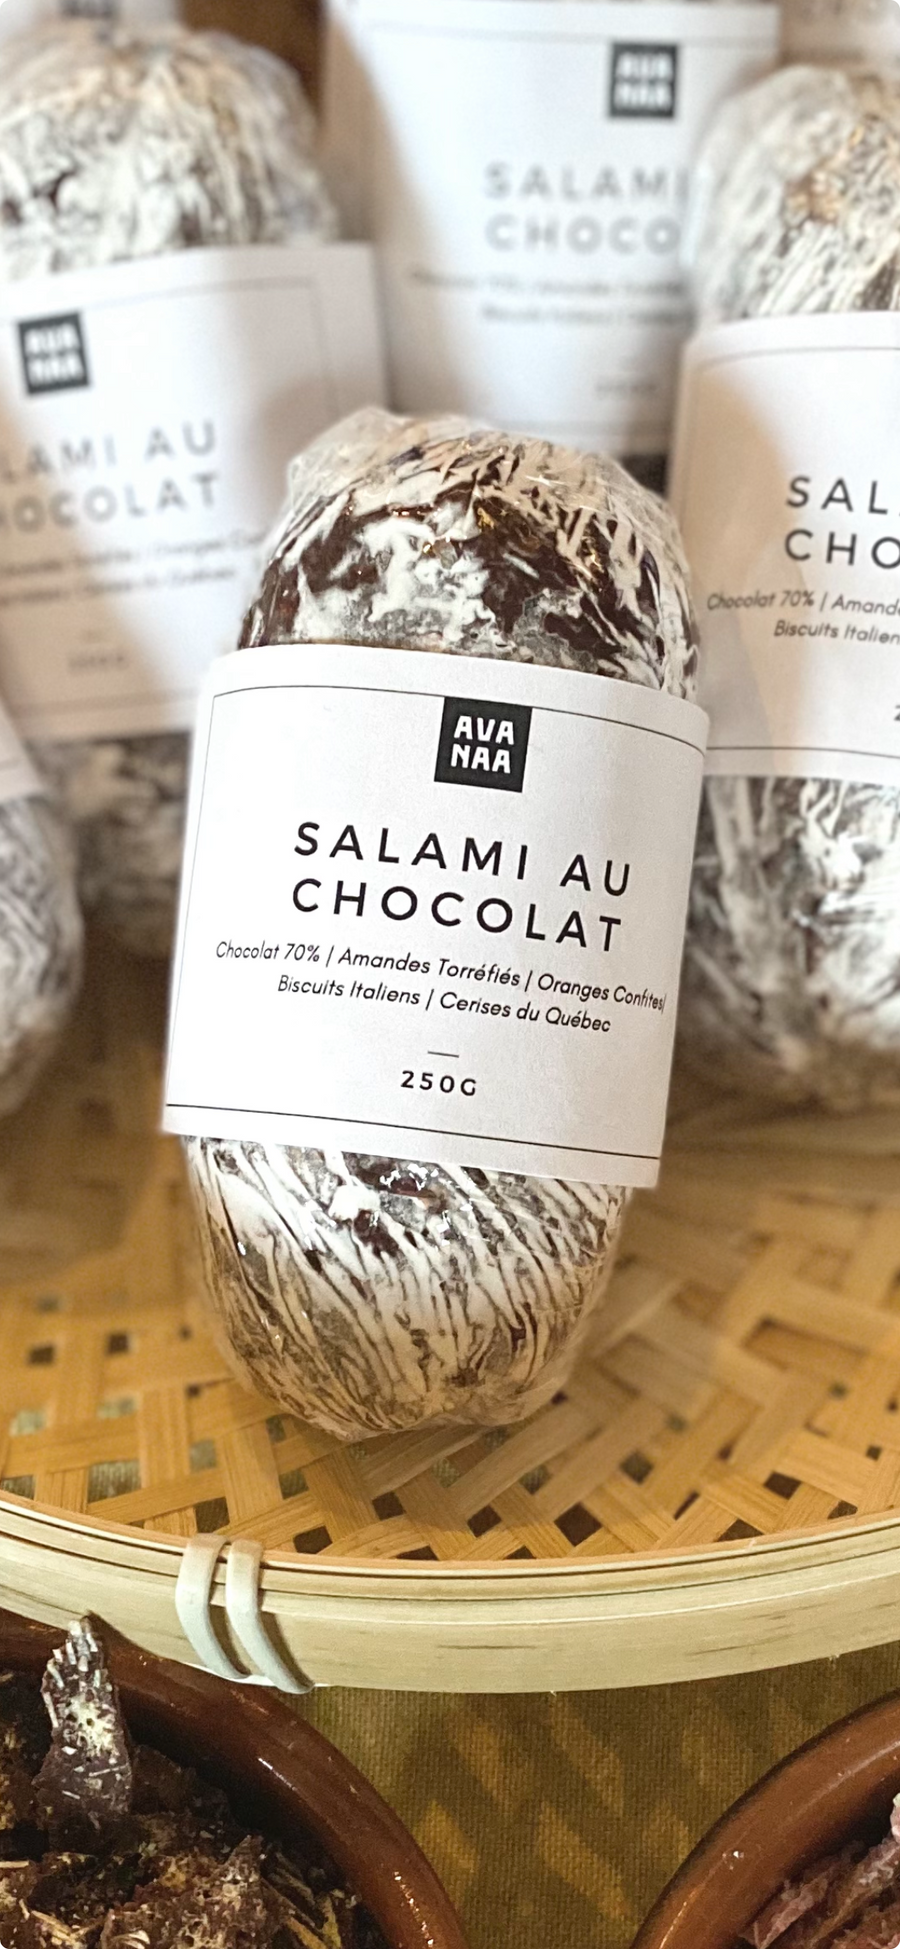 Chocolate salami